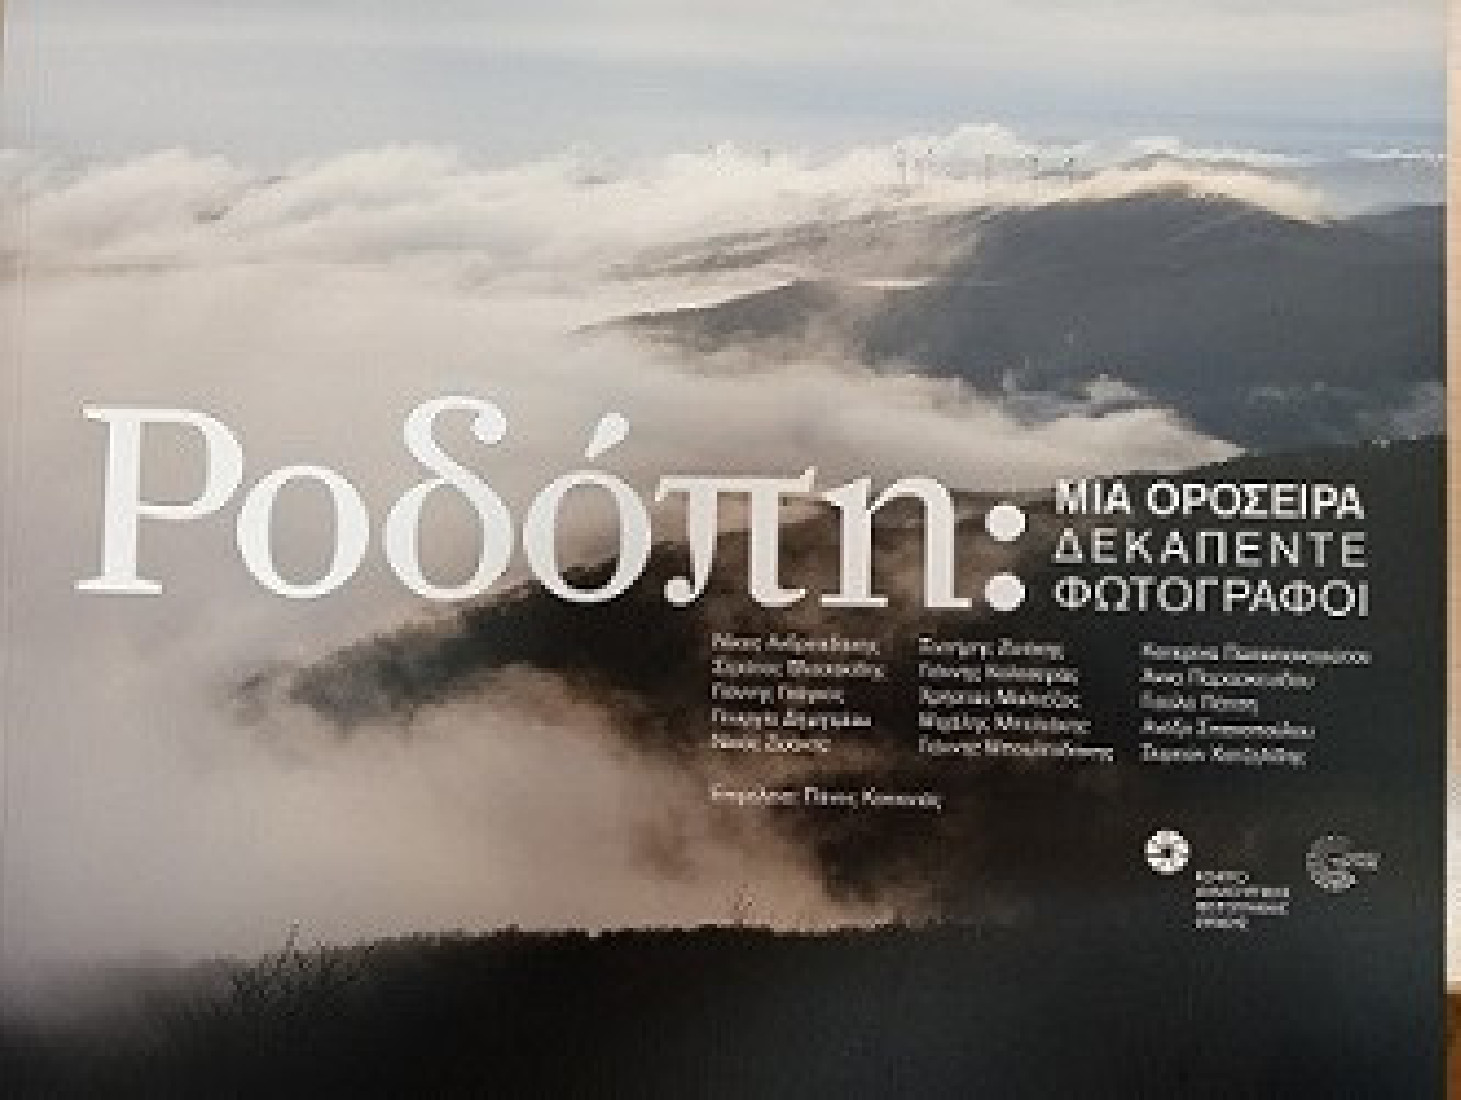 Ροδόπη: Μια οροσειρά δεκαπέντε φωτογράφοι